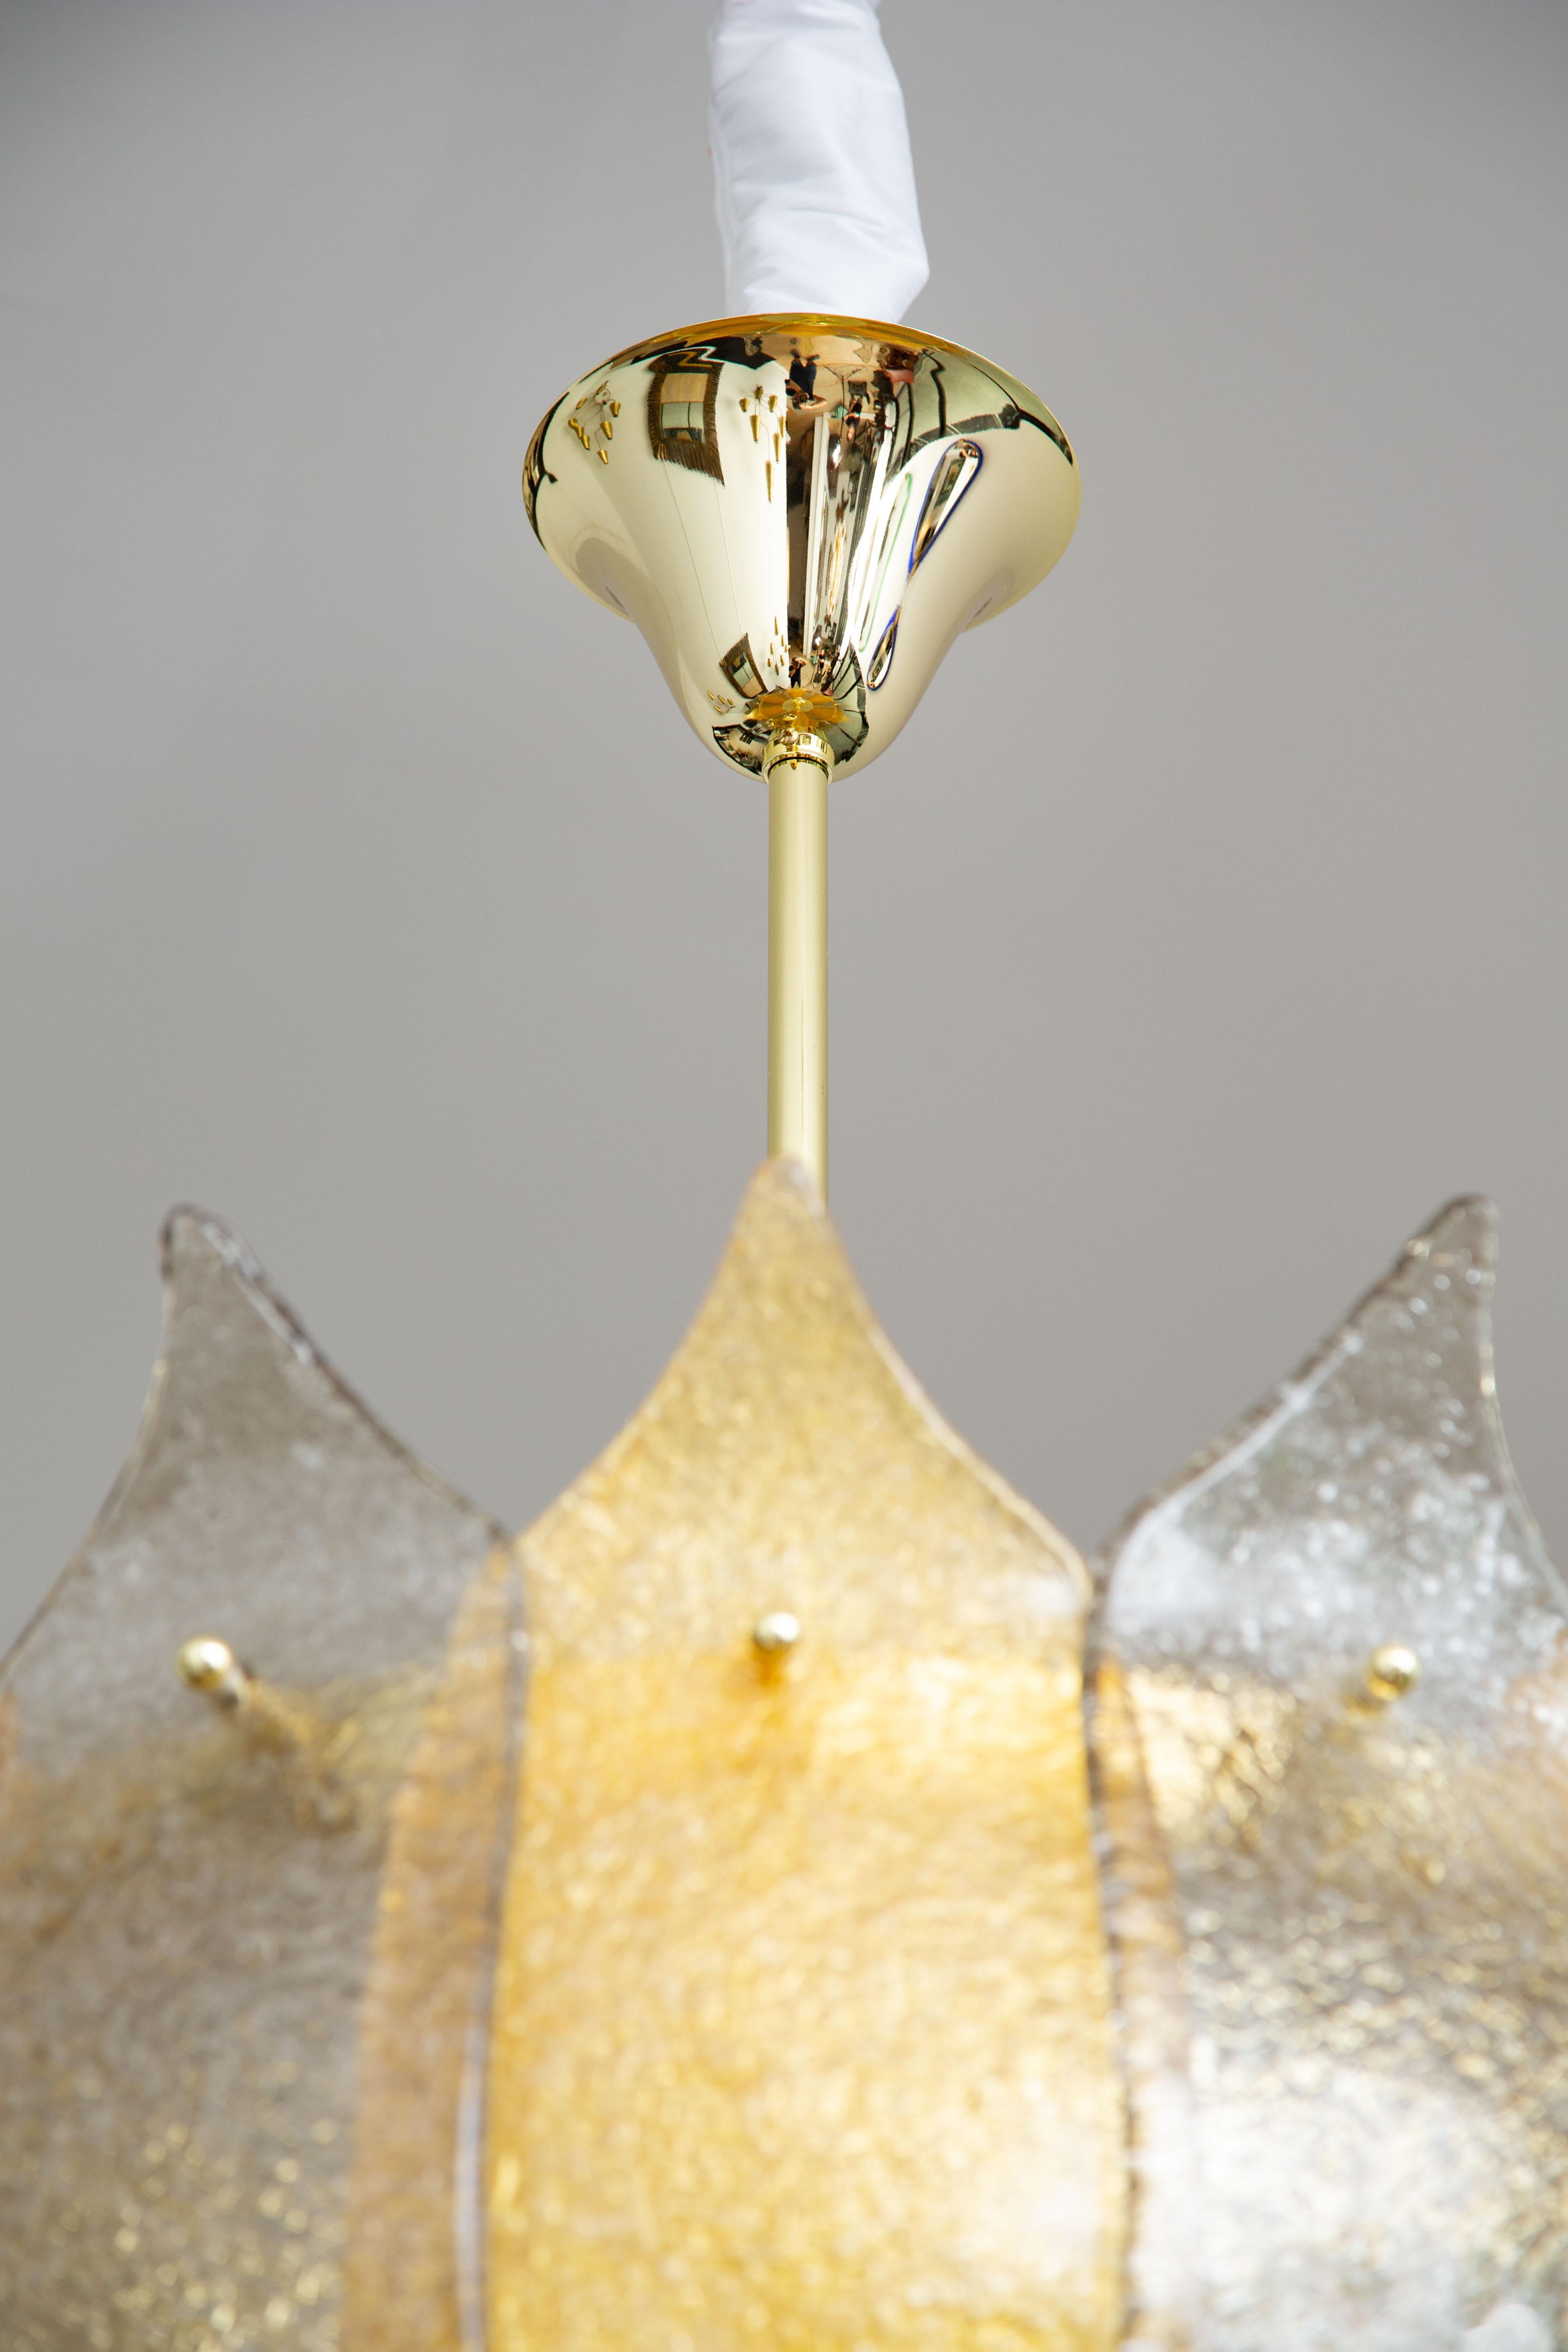 Italian Murano Glass Lantern or Cesendello, in Stock